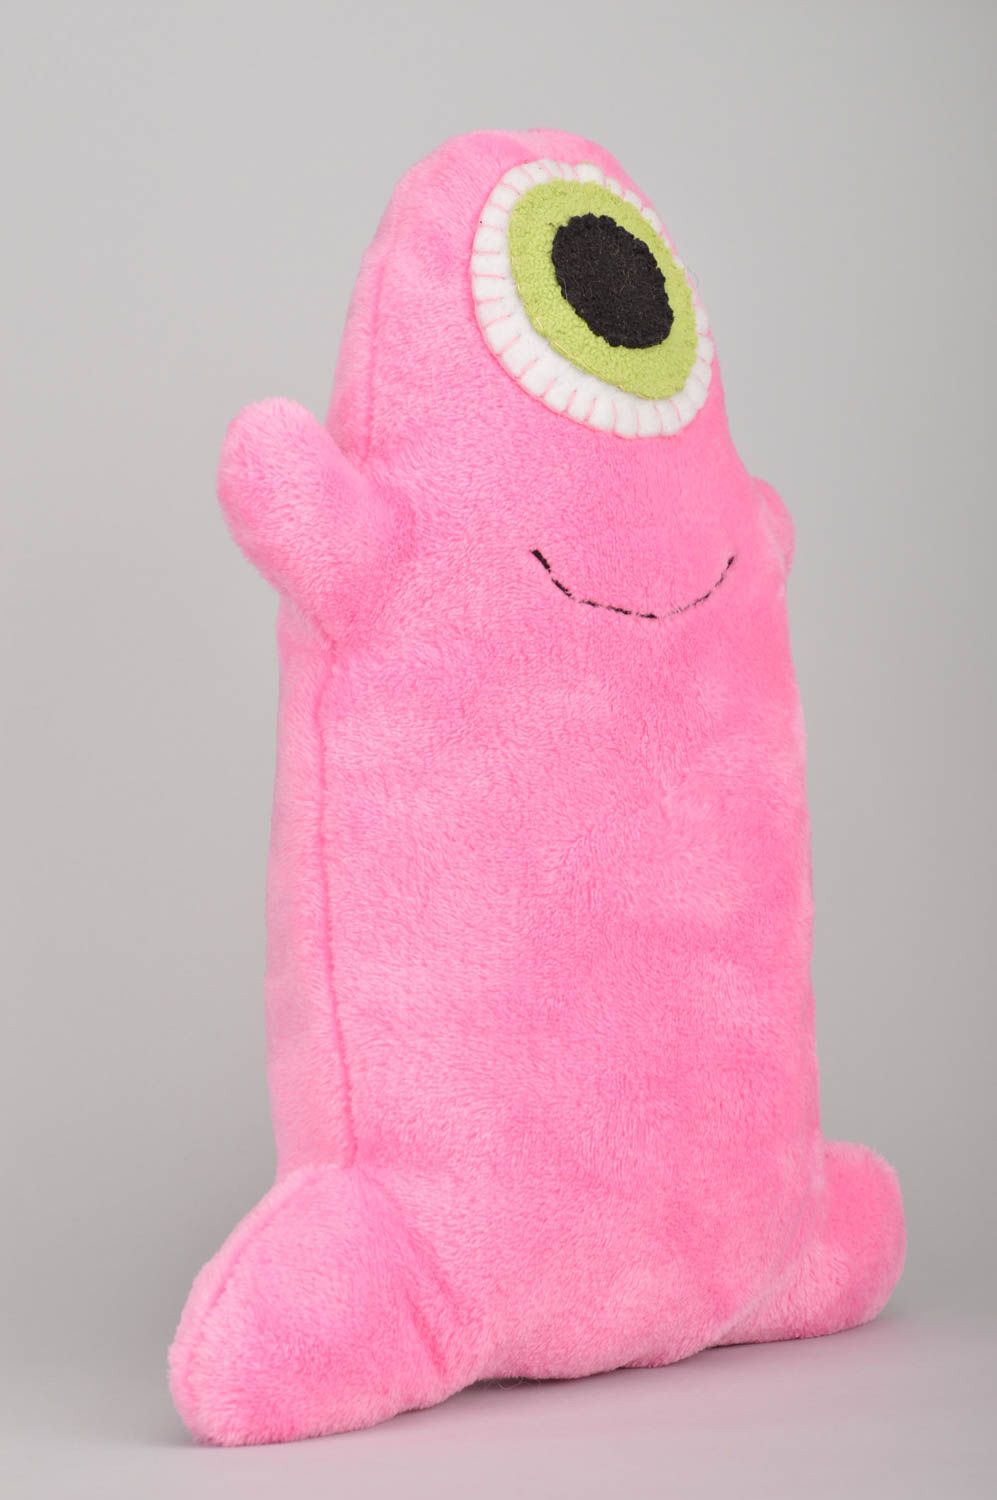 Muñeco de peluche con forma de monstruo rosado hecho a mano juguete para niños foto 2